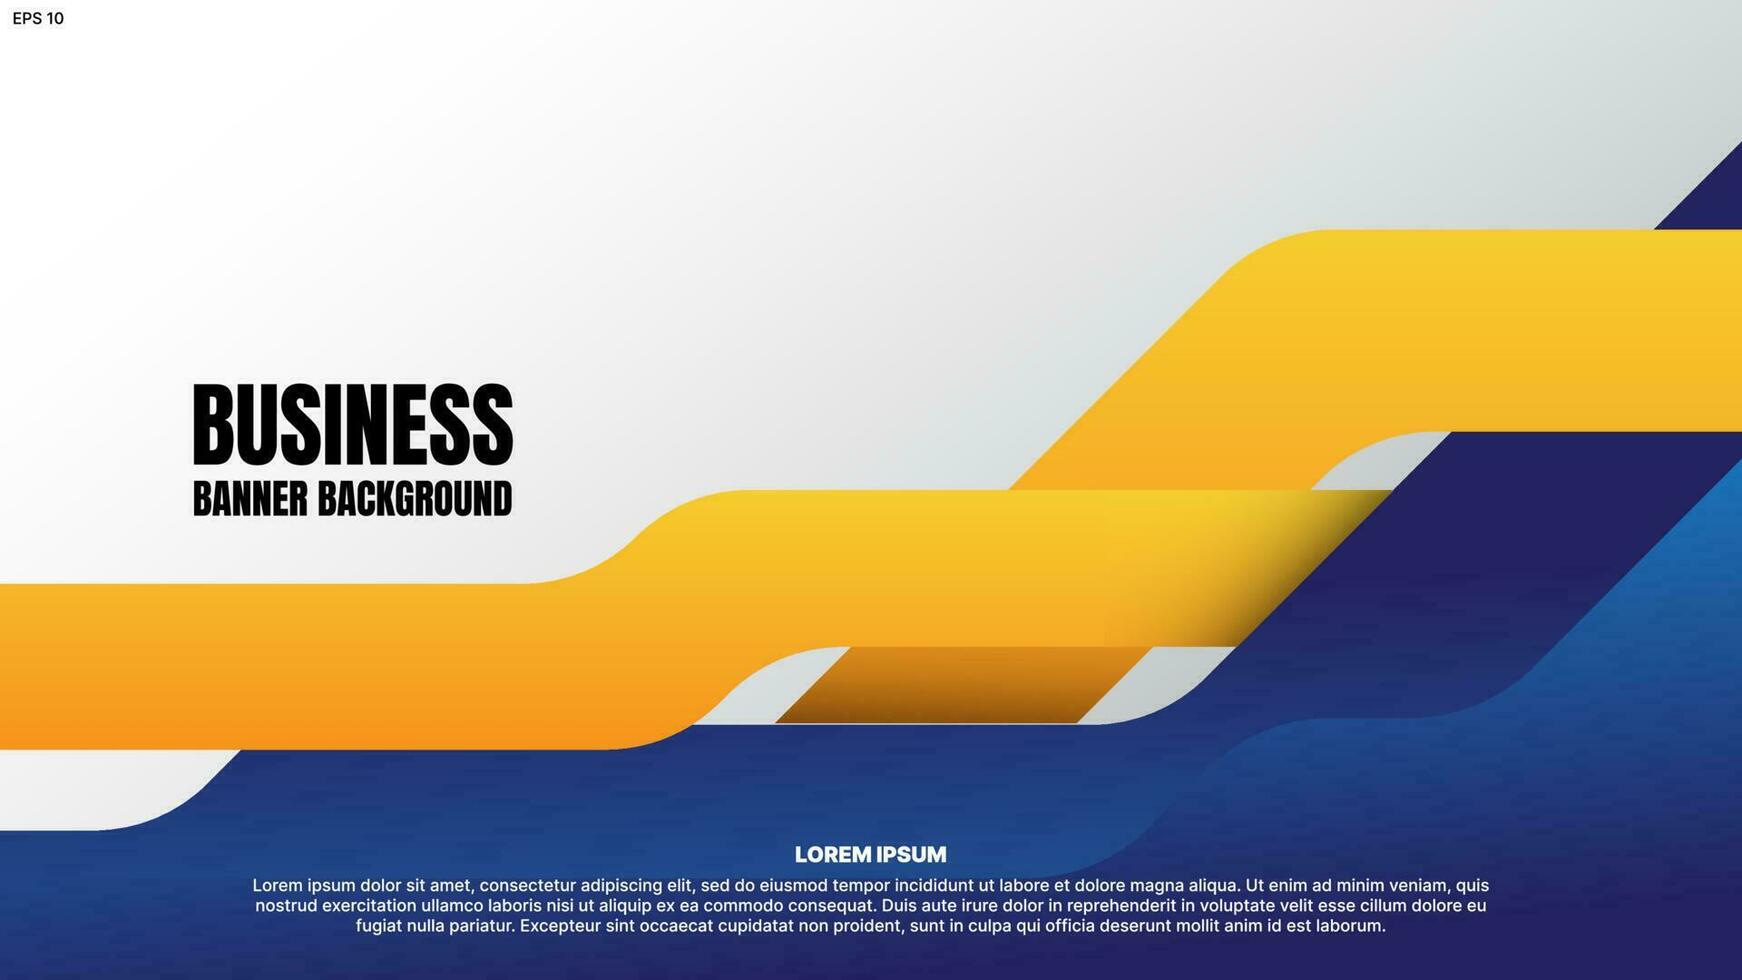 företag företags- baner bakgrund med gul och blå abstrakt former. vektor illustration